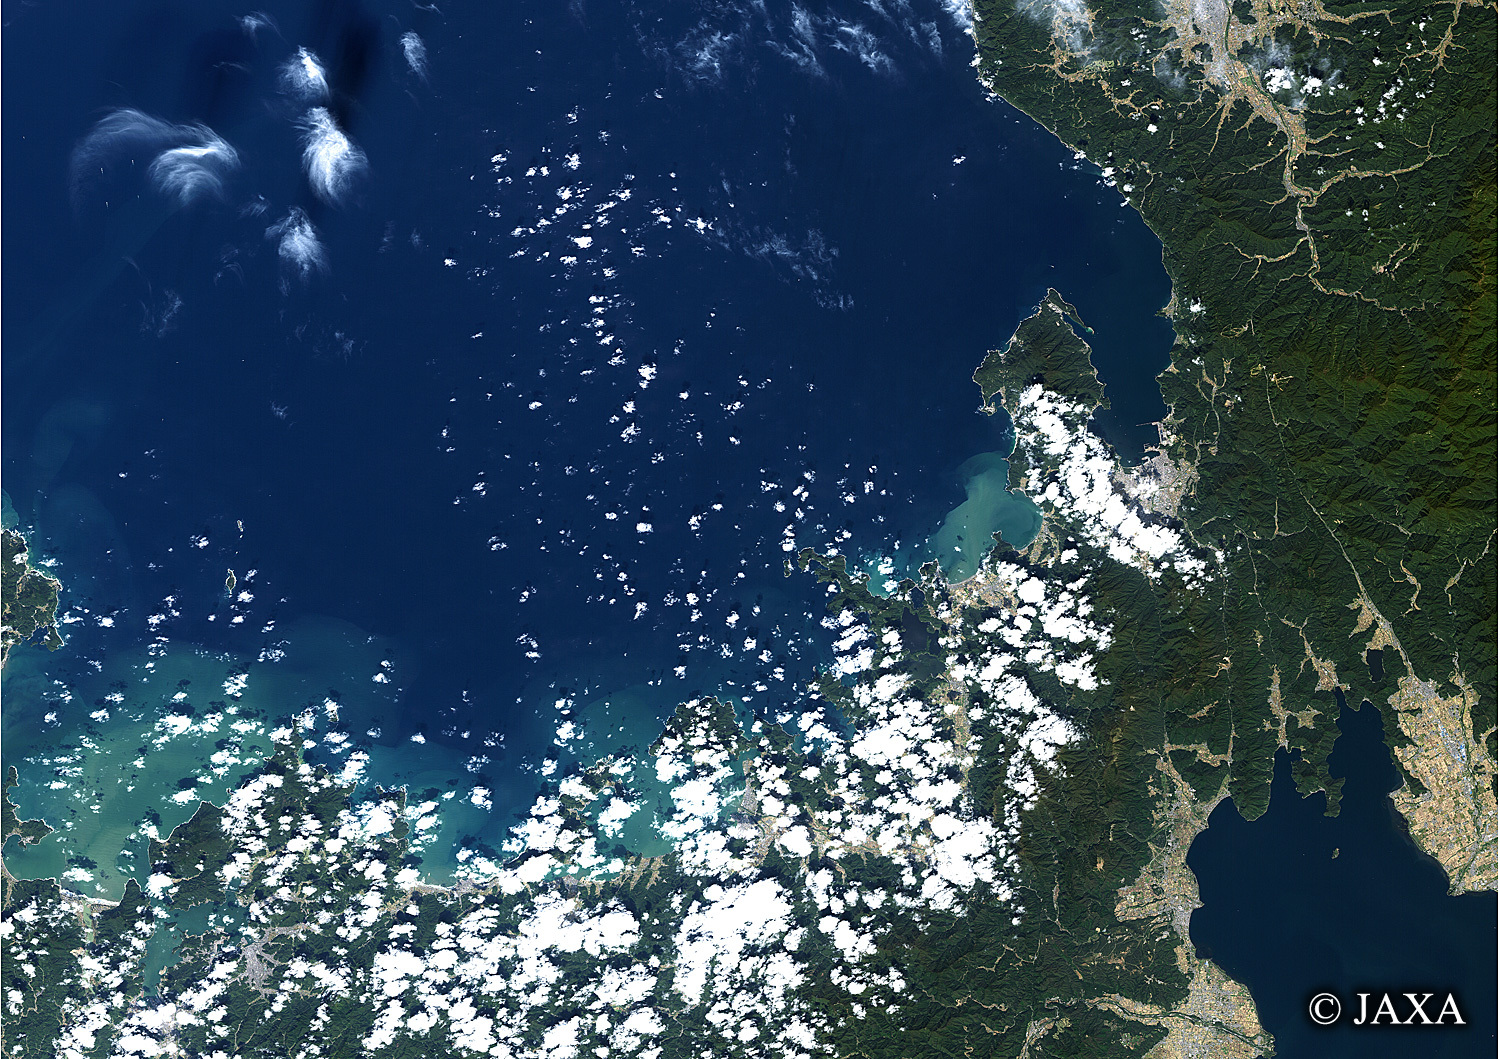 だいちから見た日本の都市 若狭湾:衛星画像